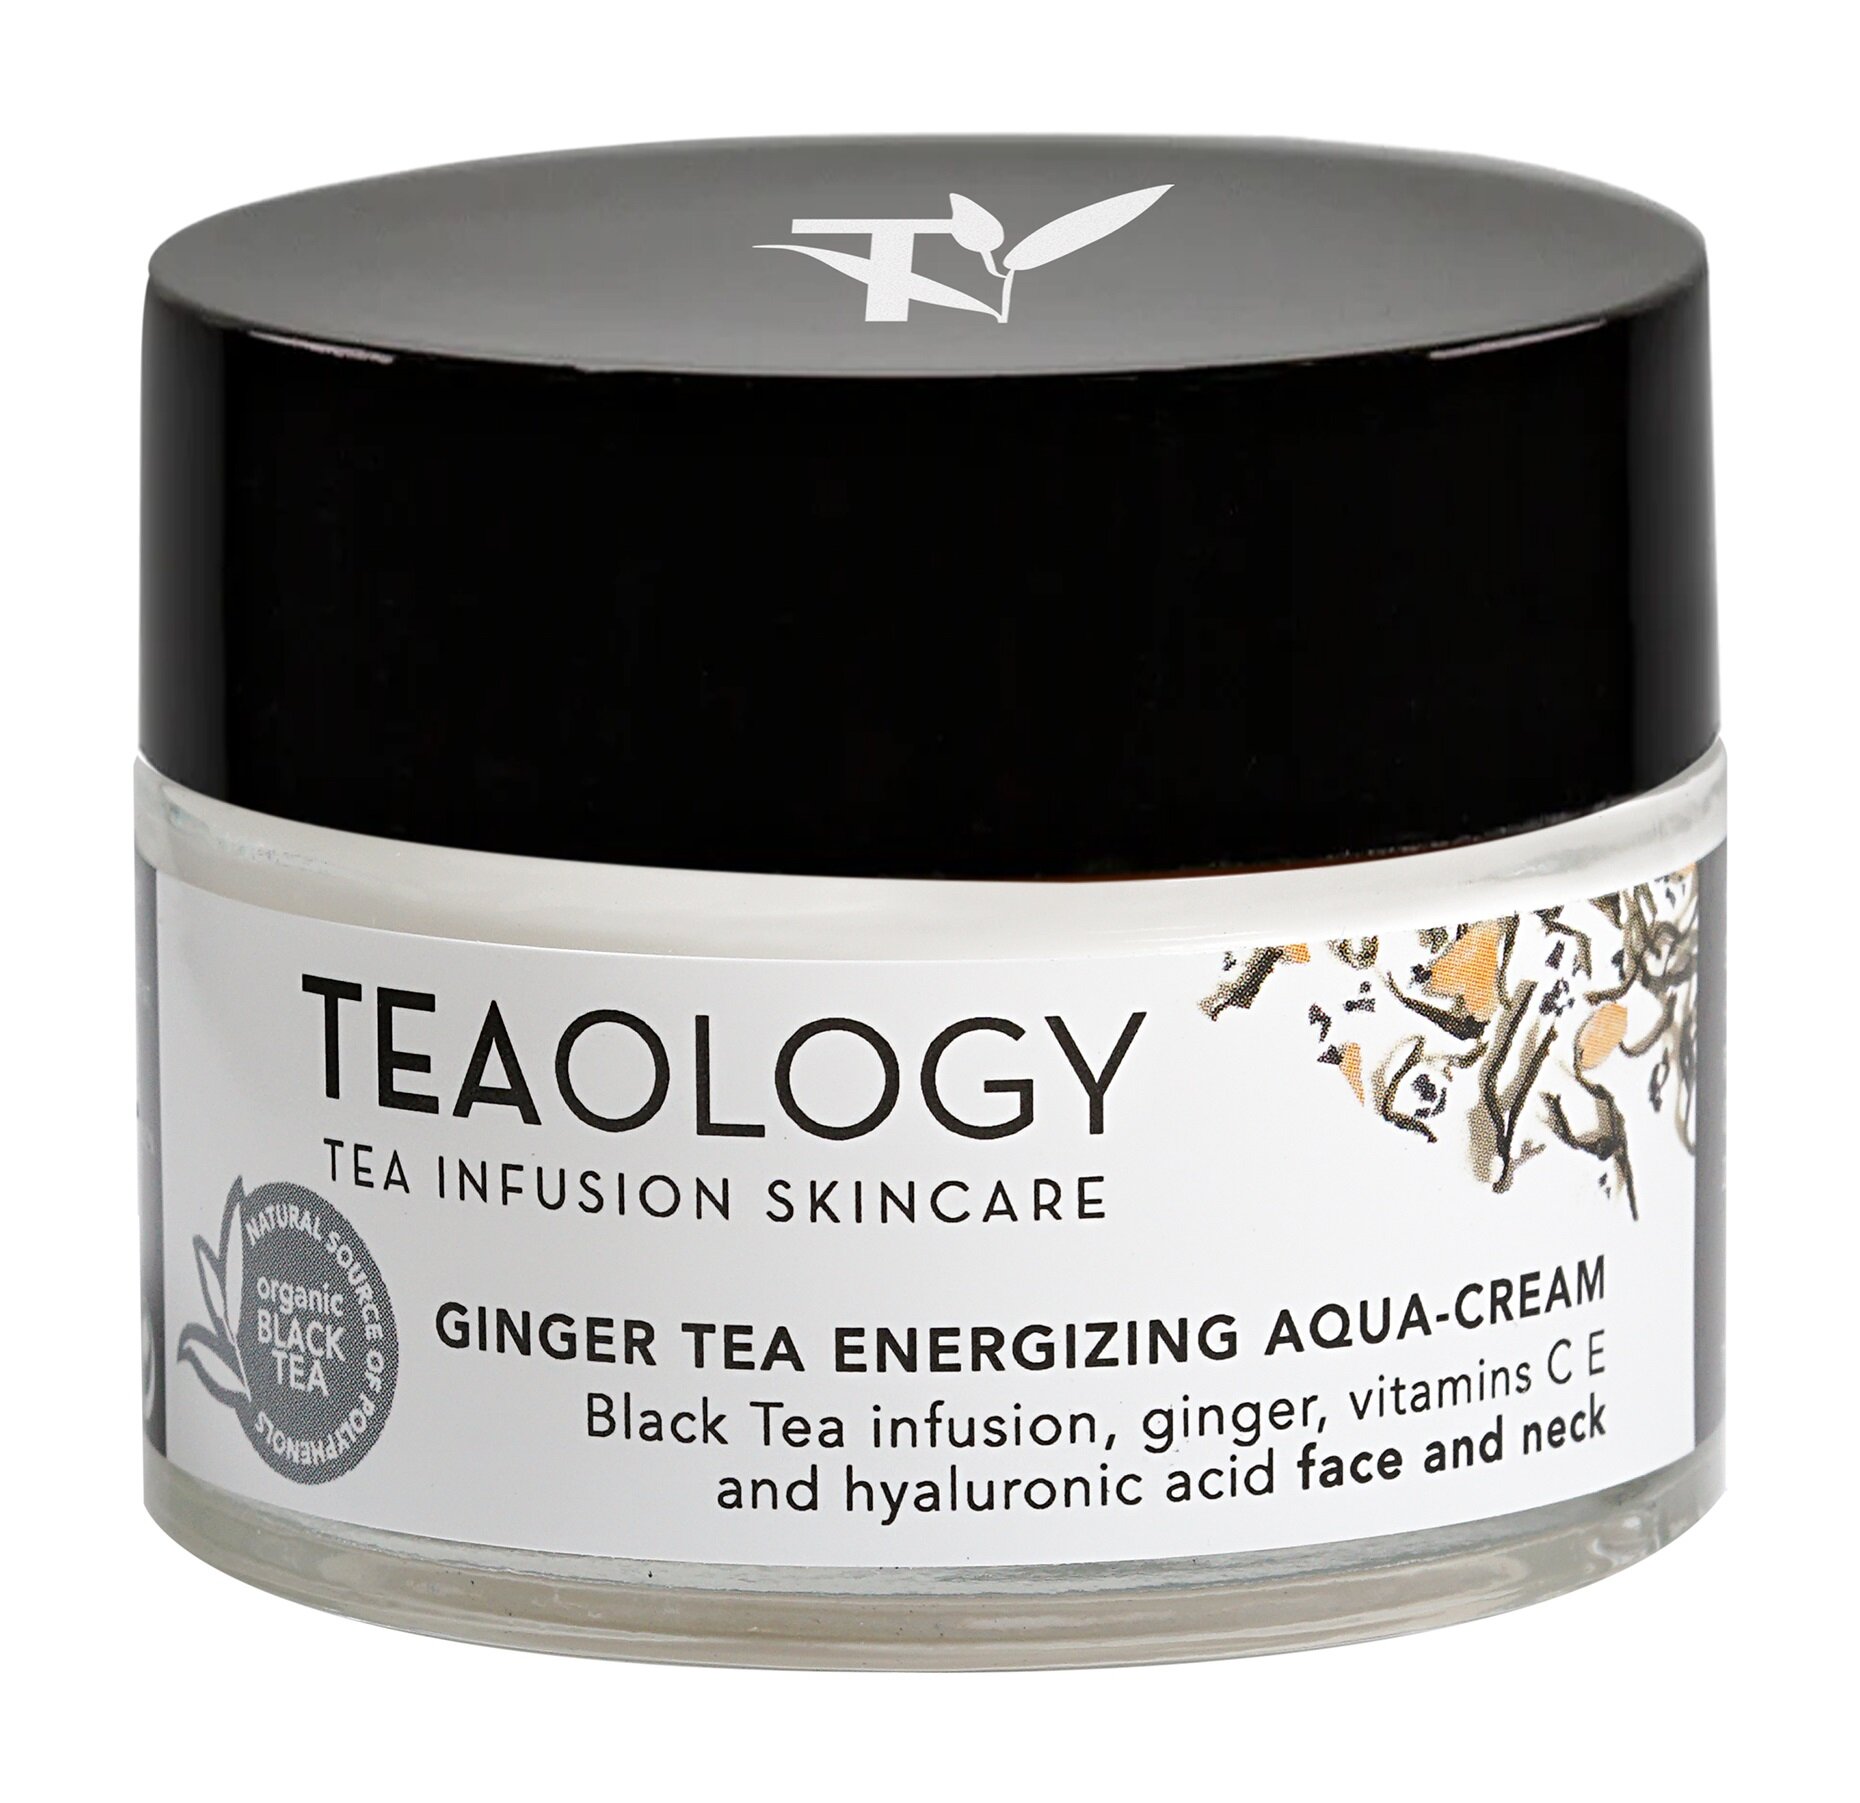 Восстанавливающий аква-крем для лица с черным чаем Teaology Ginger Tea Energizing Aqua-Cream